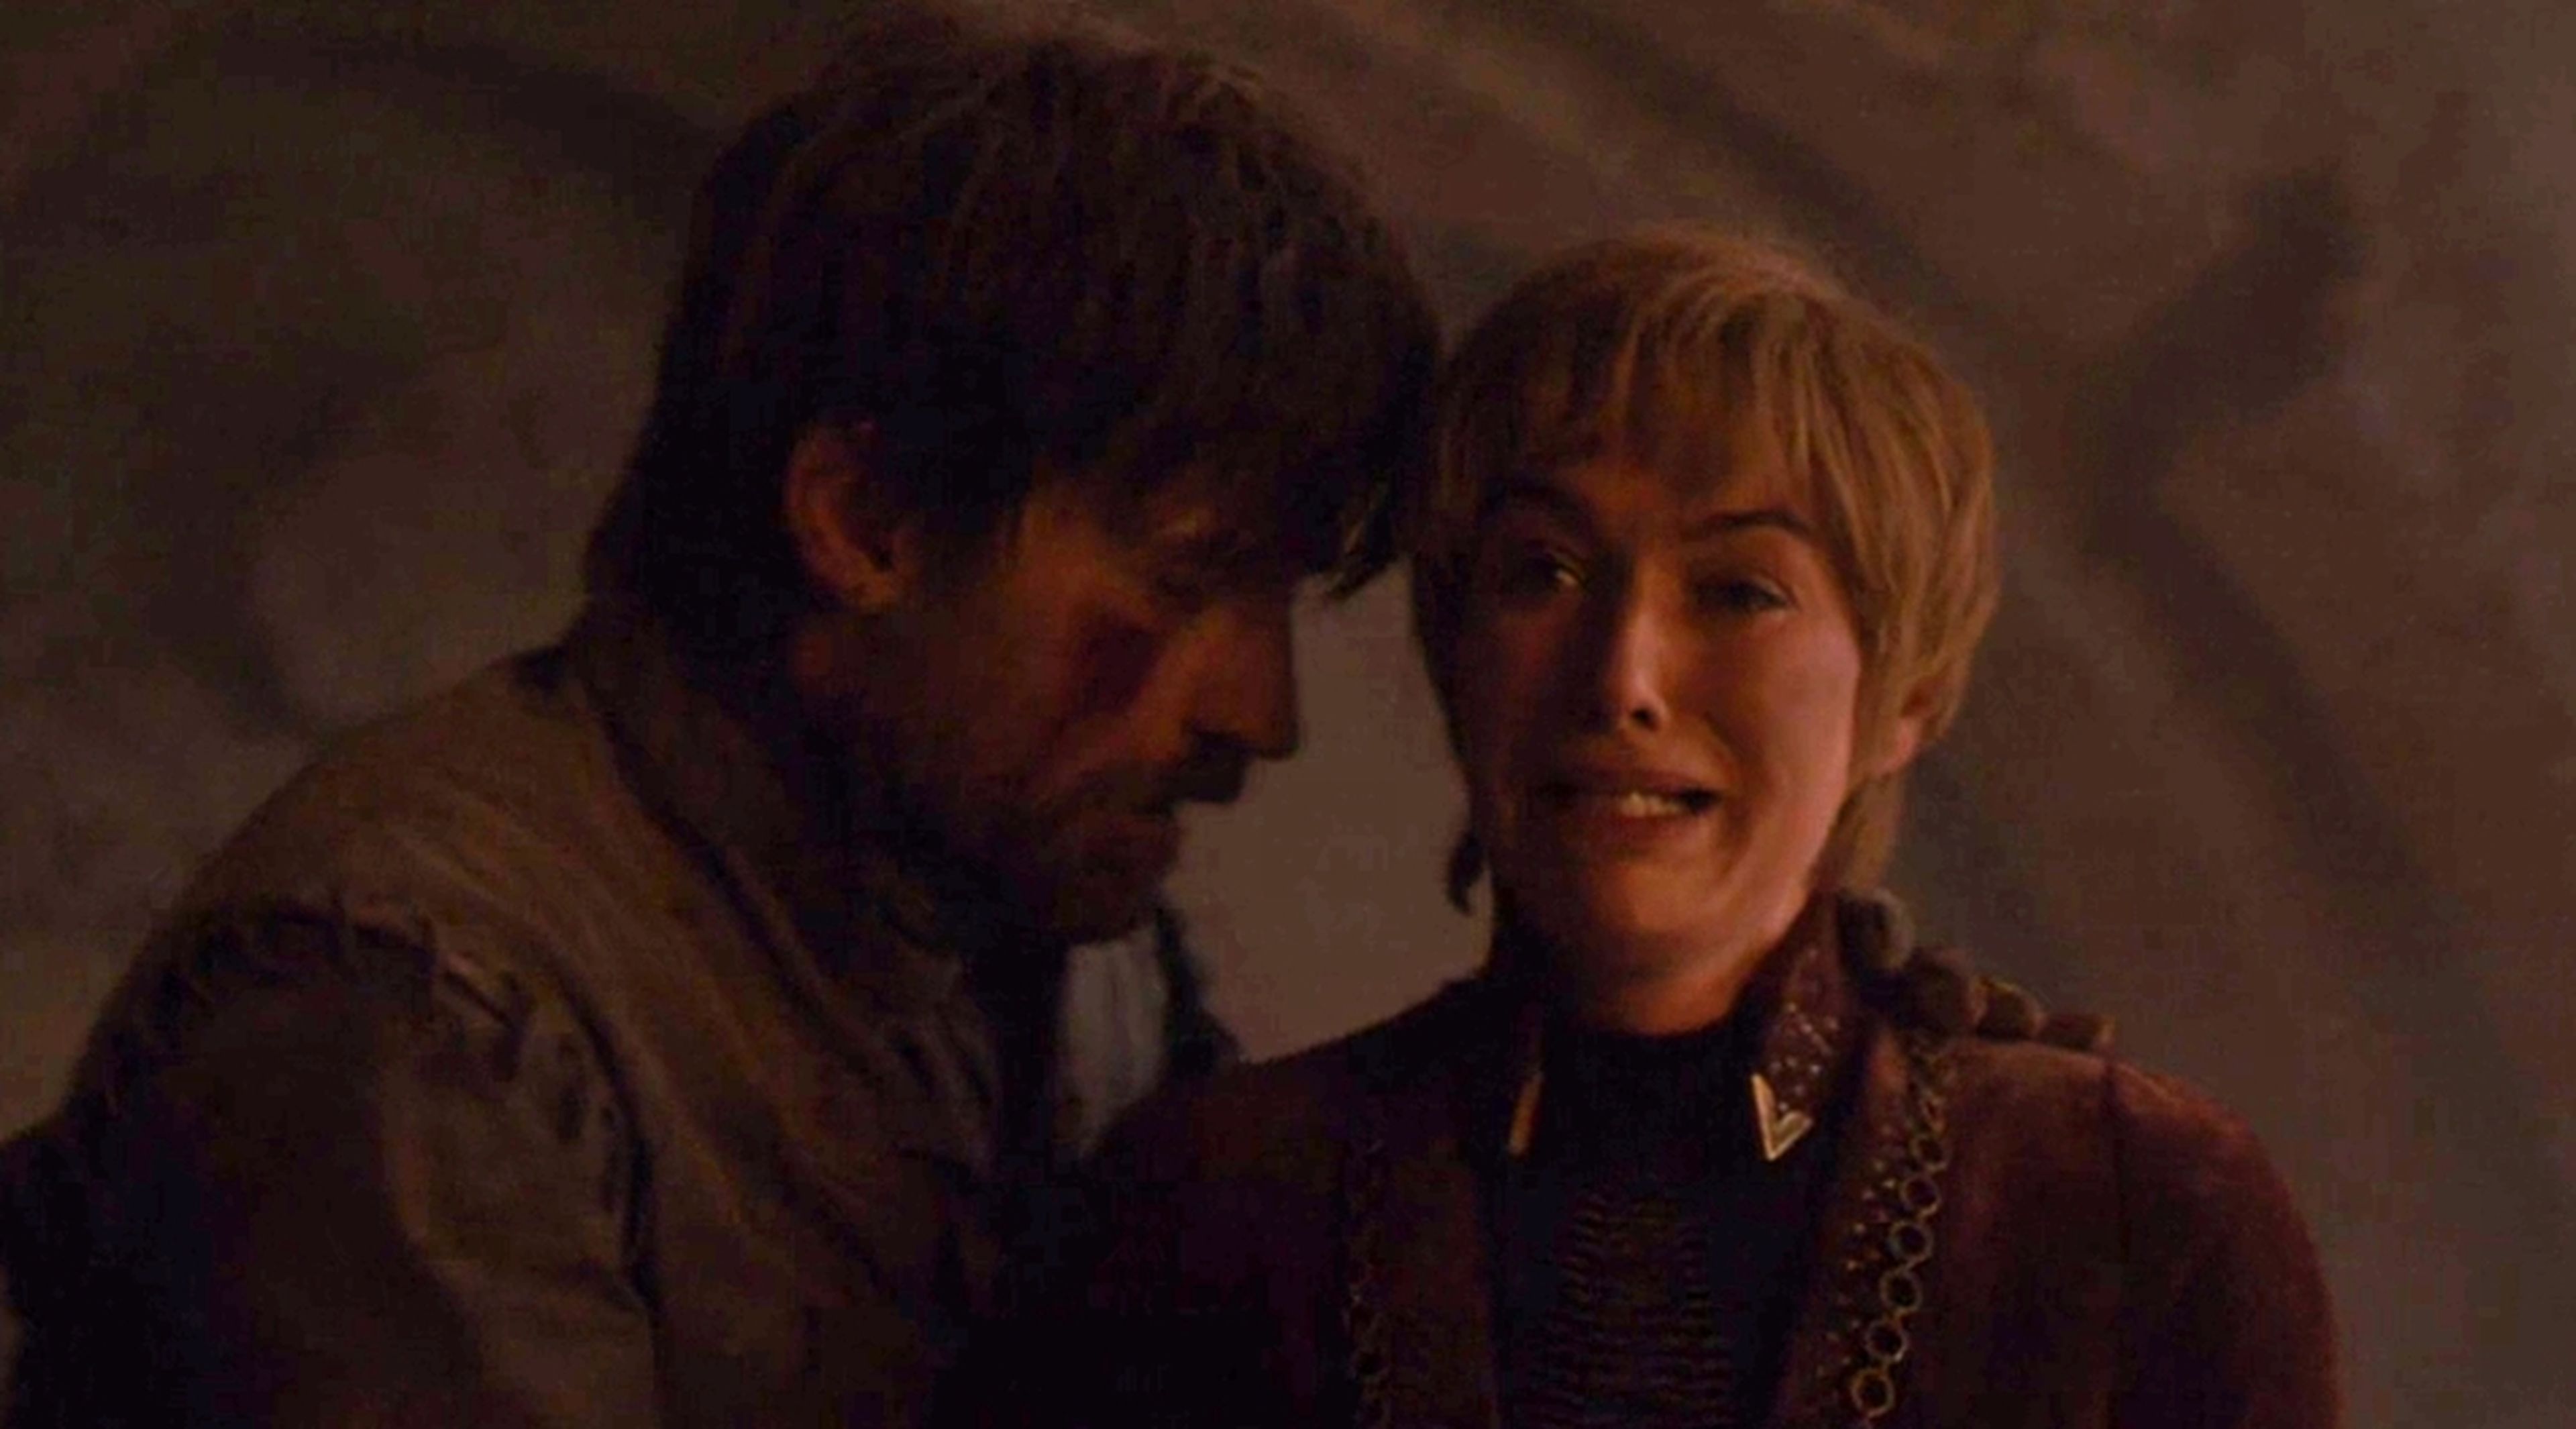 Juego de Tronos 8x05 - Jaime y Cersei Lannister